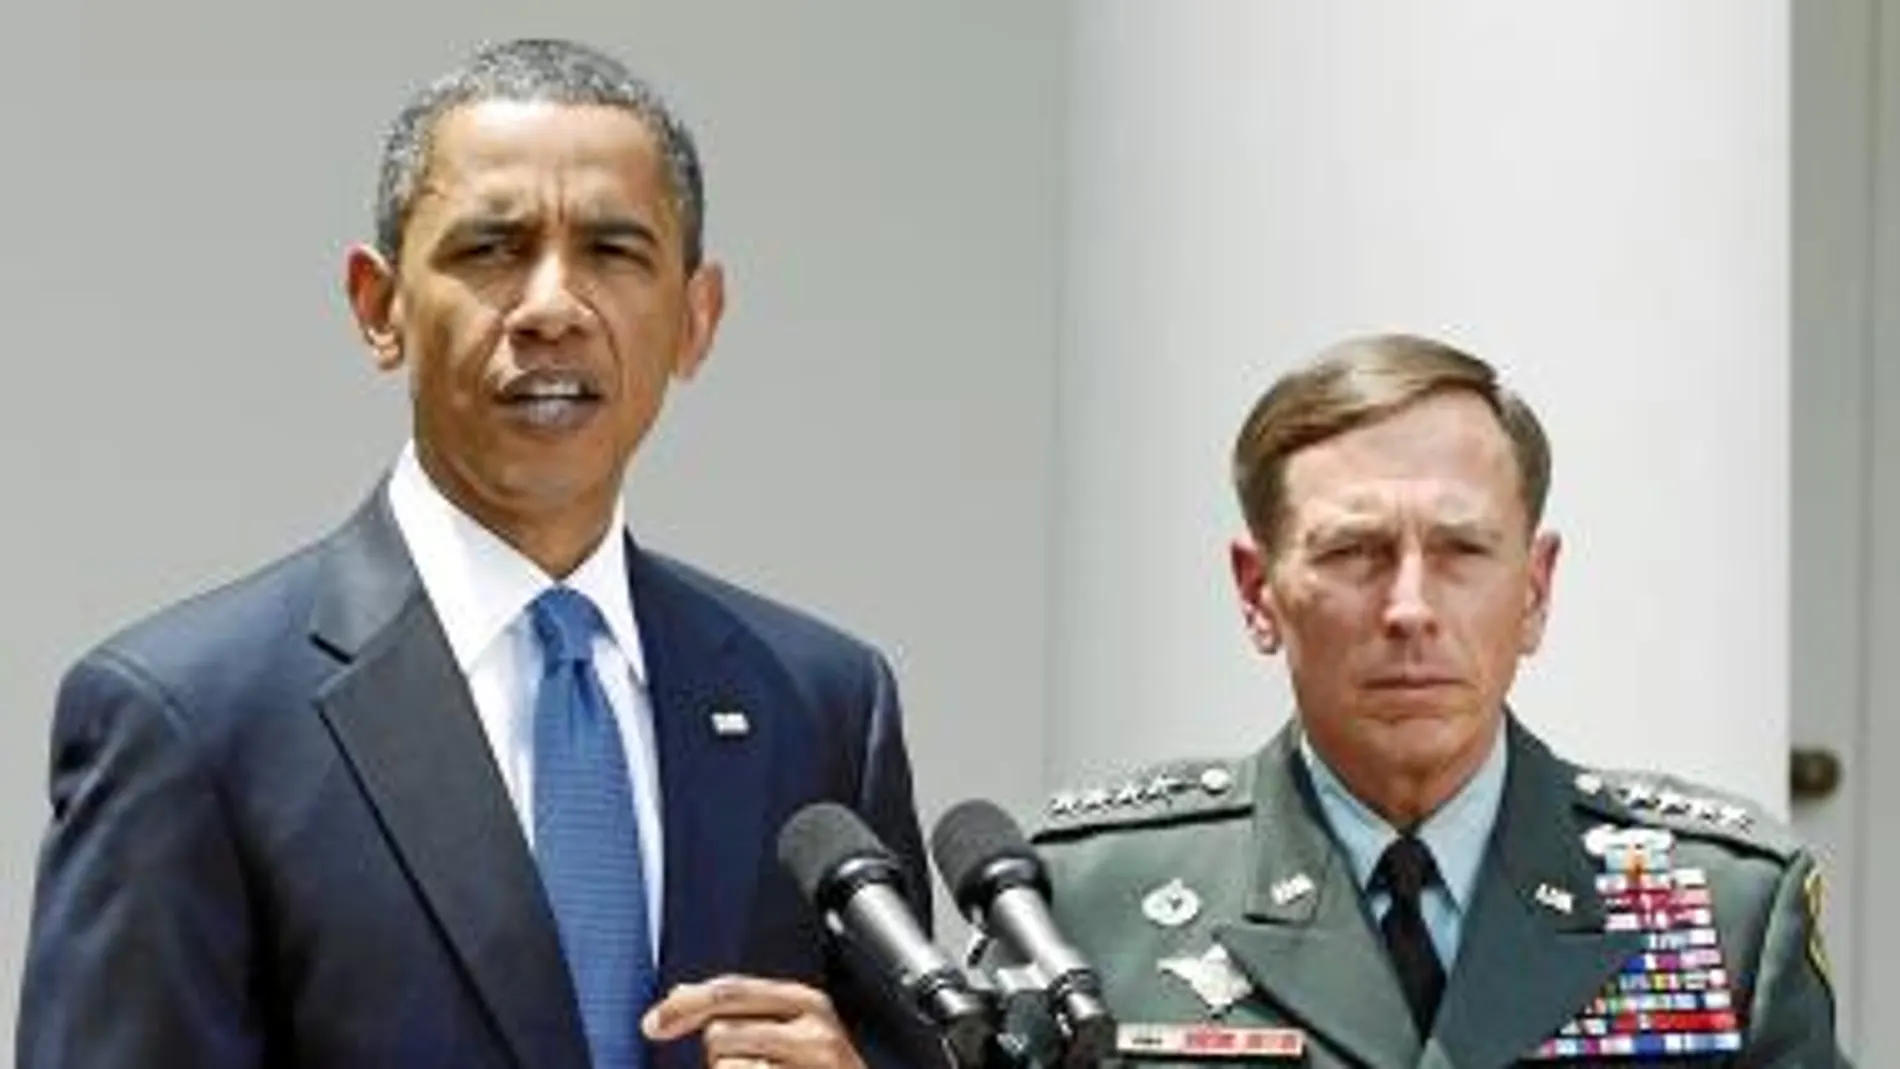 El presidente Obama presentó ayer al general David Petraeus como el nuevo comandante de las fuerzas aliadas en Afganistán